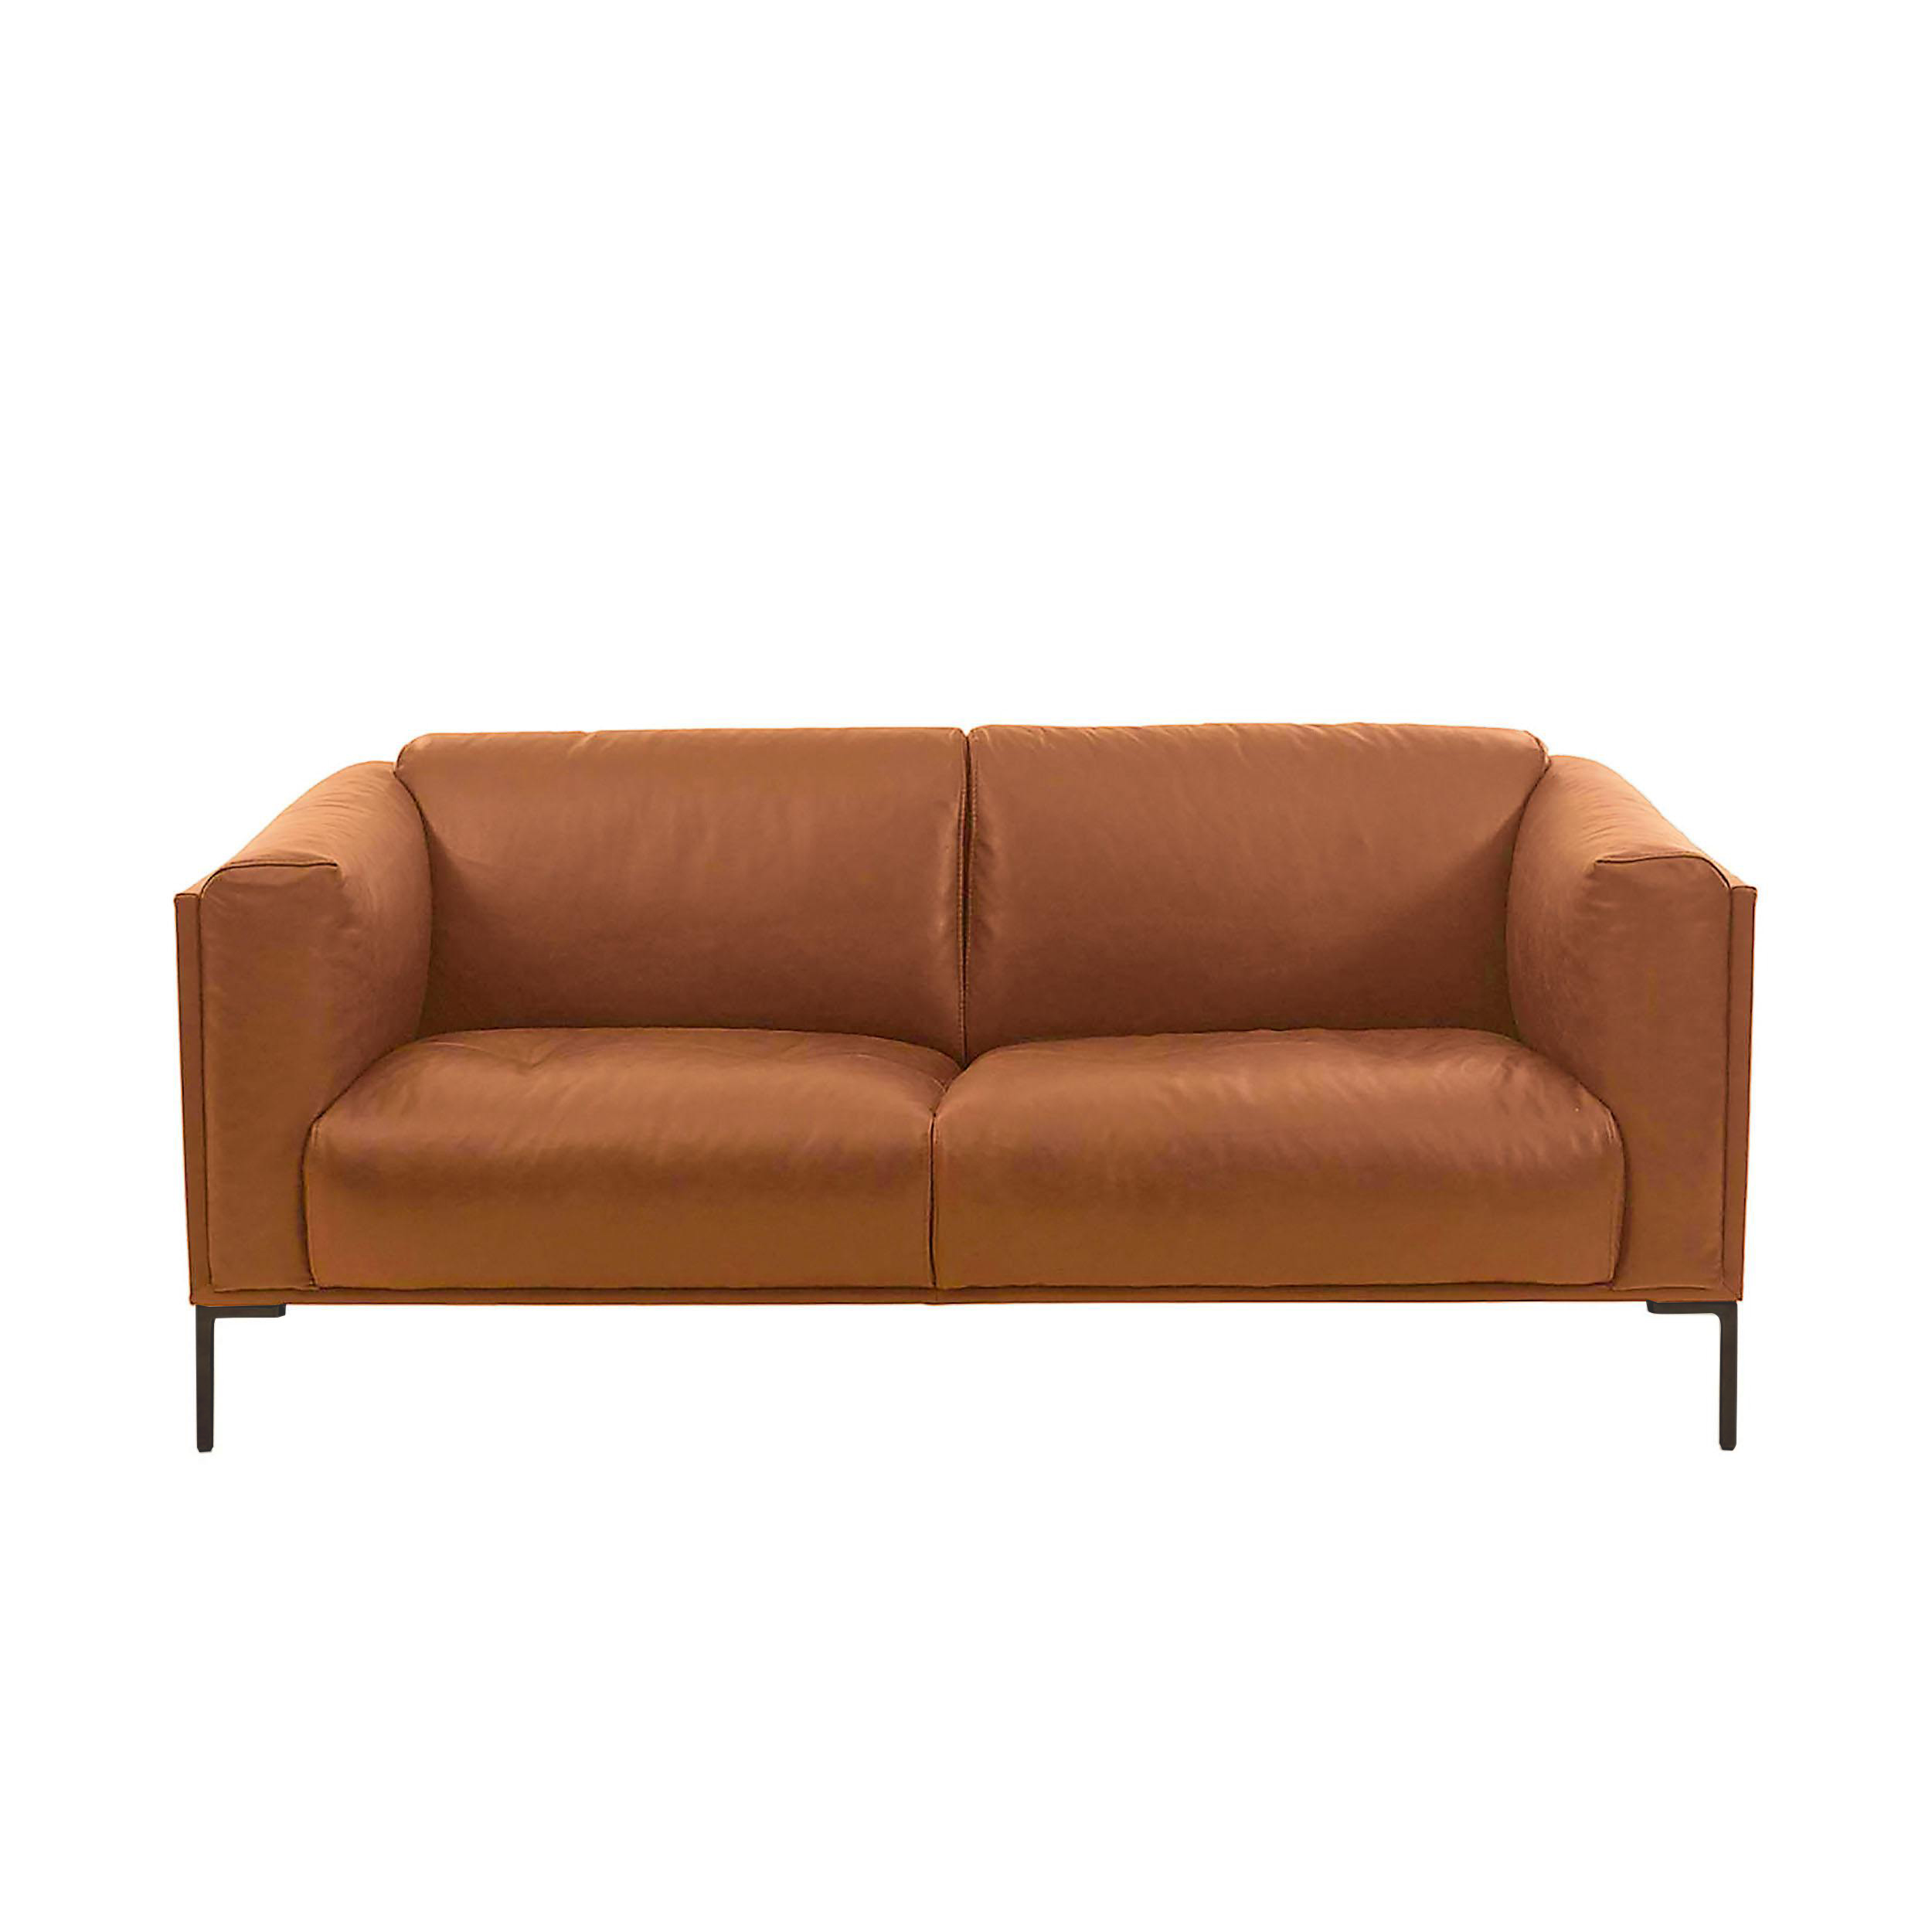 Benoni Leder Maxi 2-Sitzer Sofa